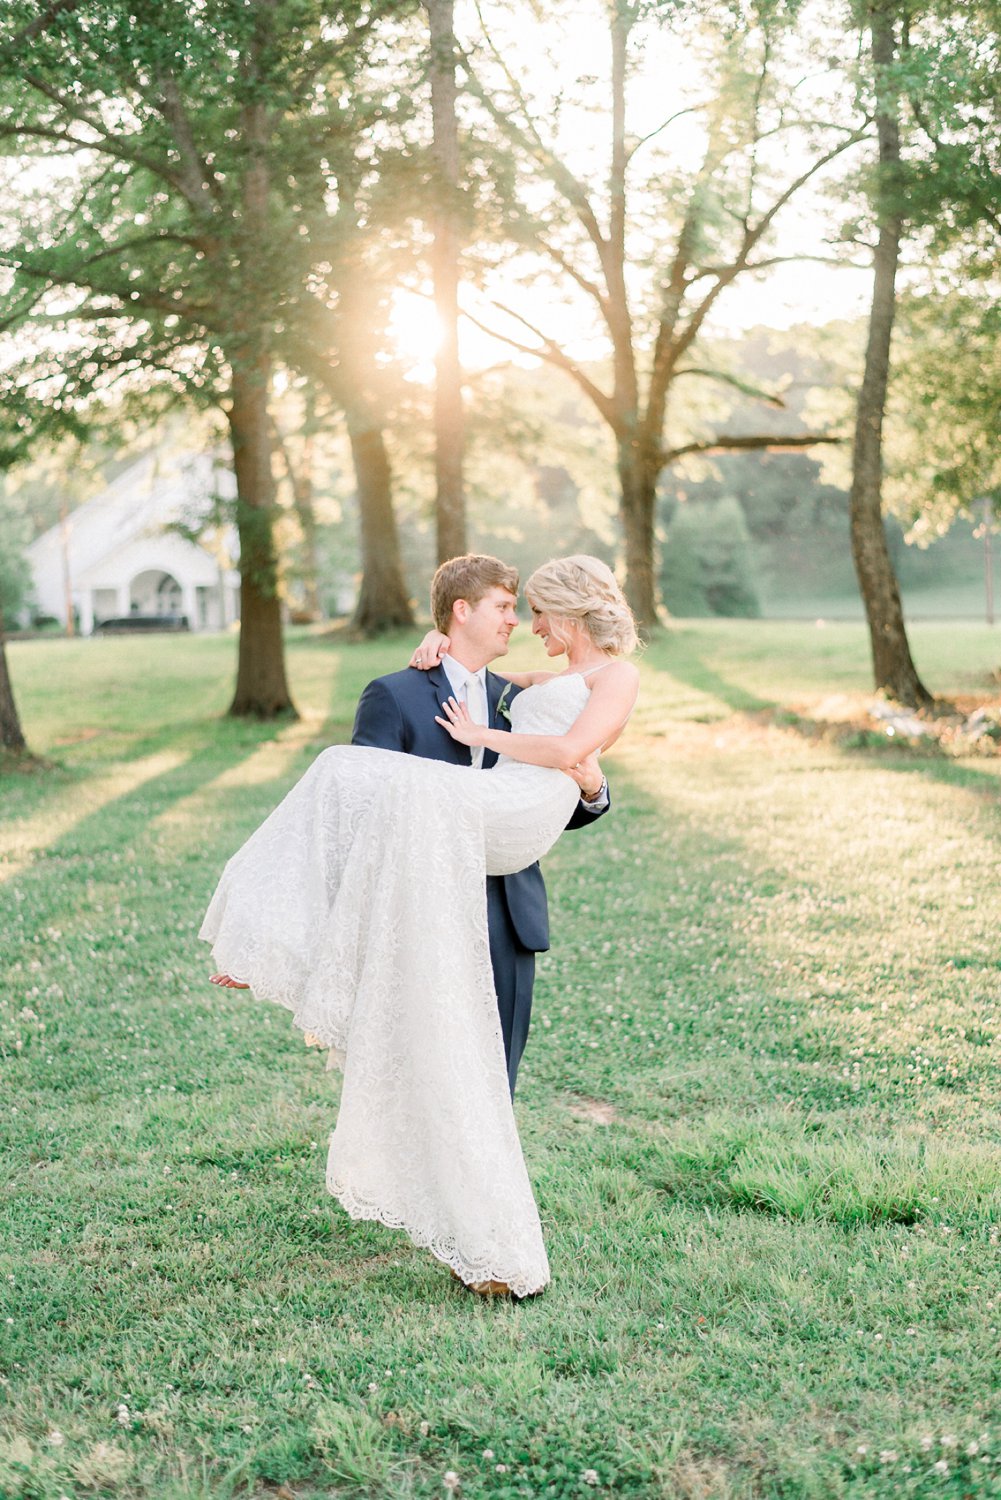 Eric & Jamie | Best Birmingham Alabama Wedding Photographers_0106.jpg